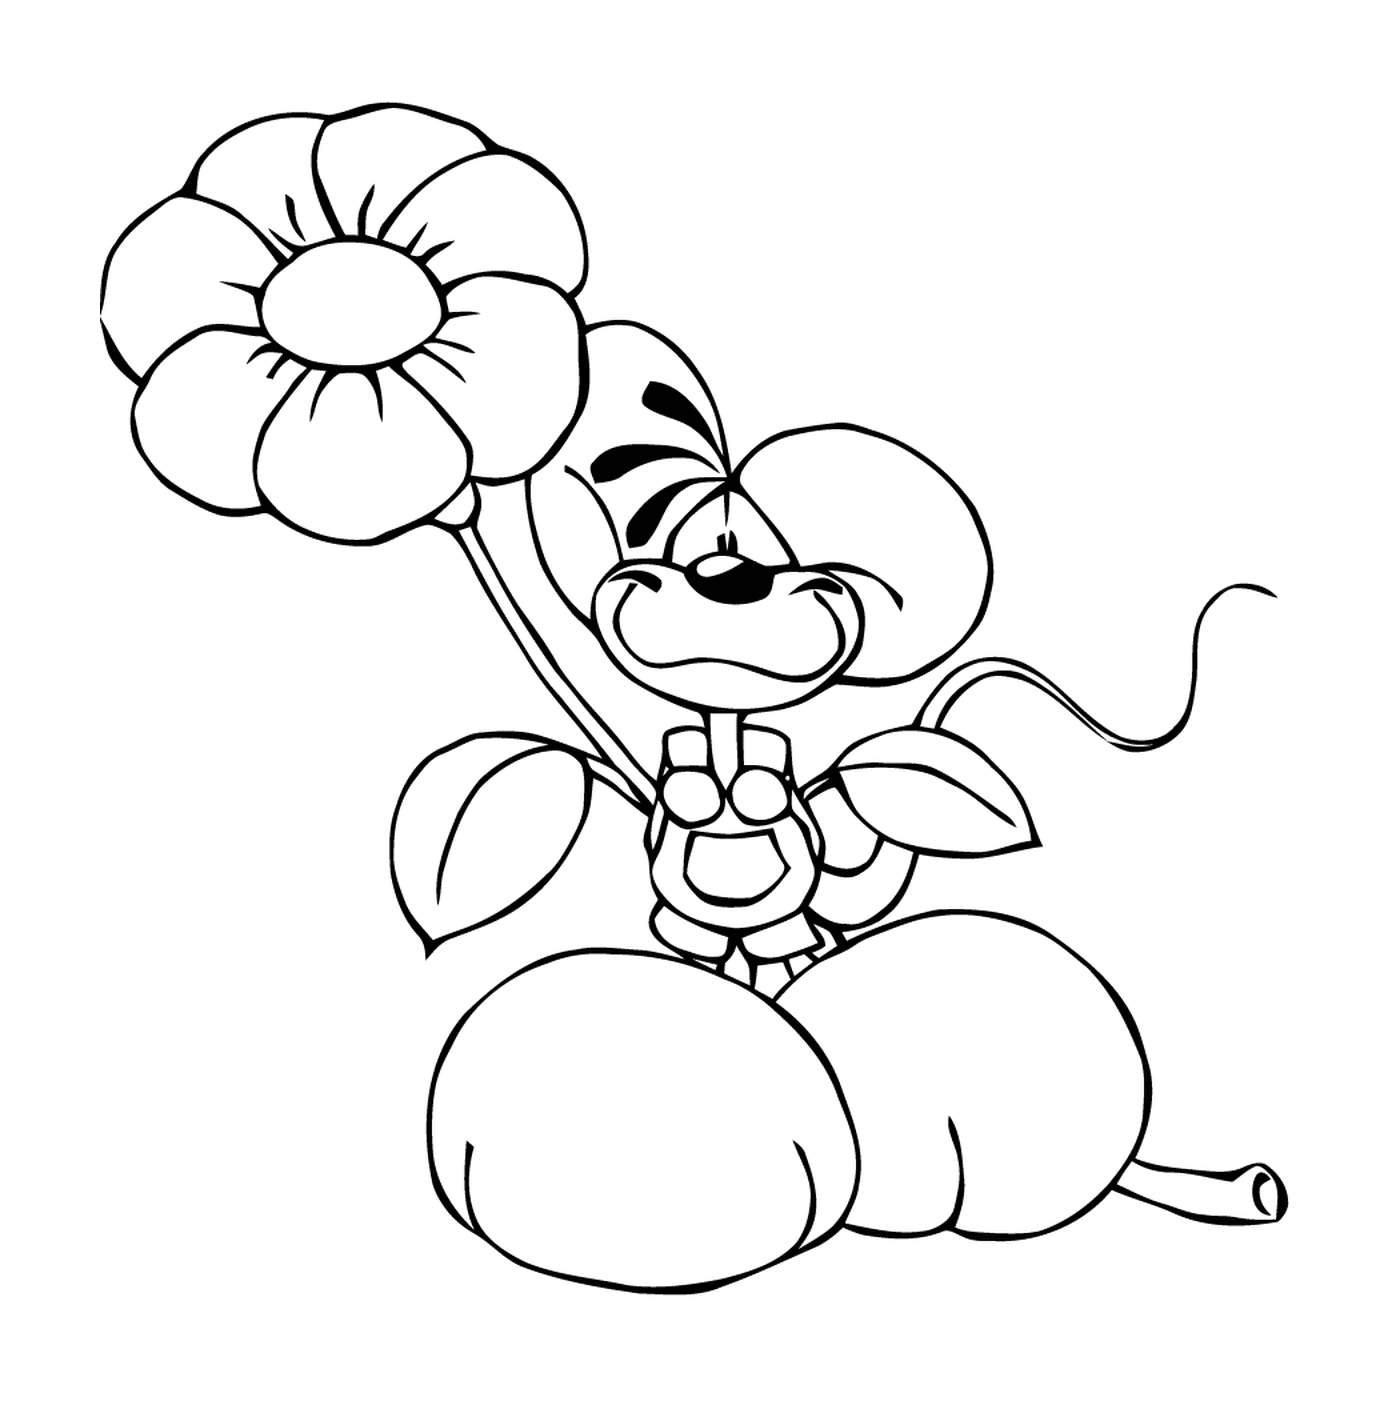  A cartoon dog holding a flower 